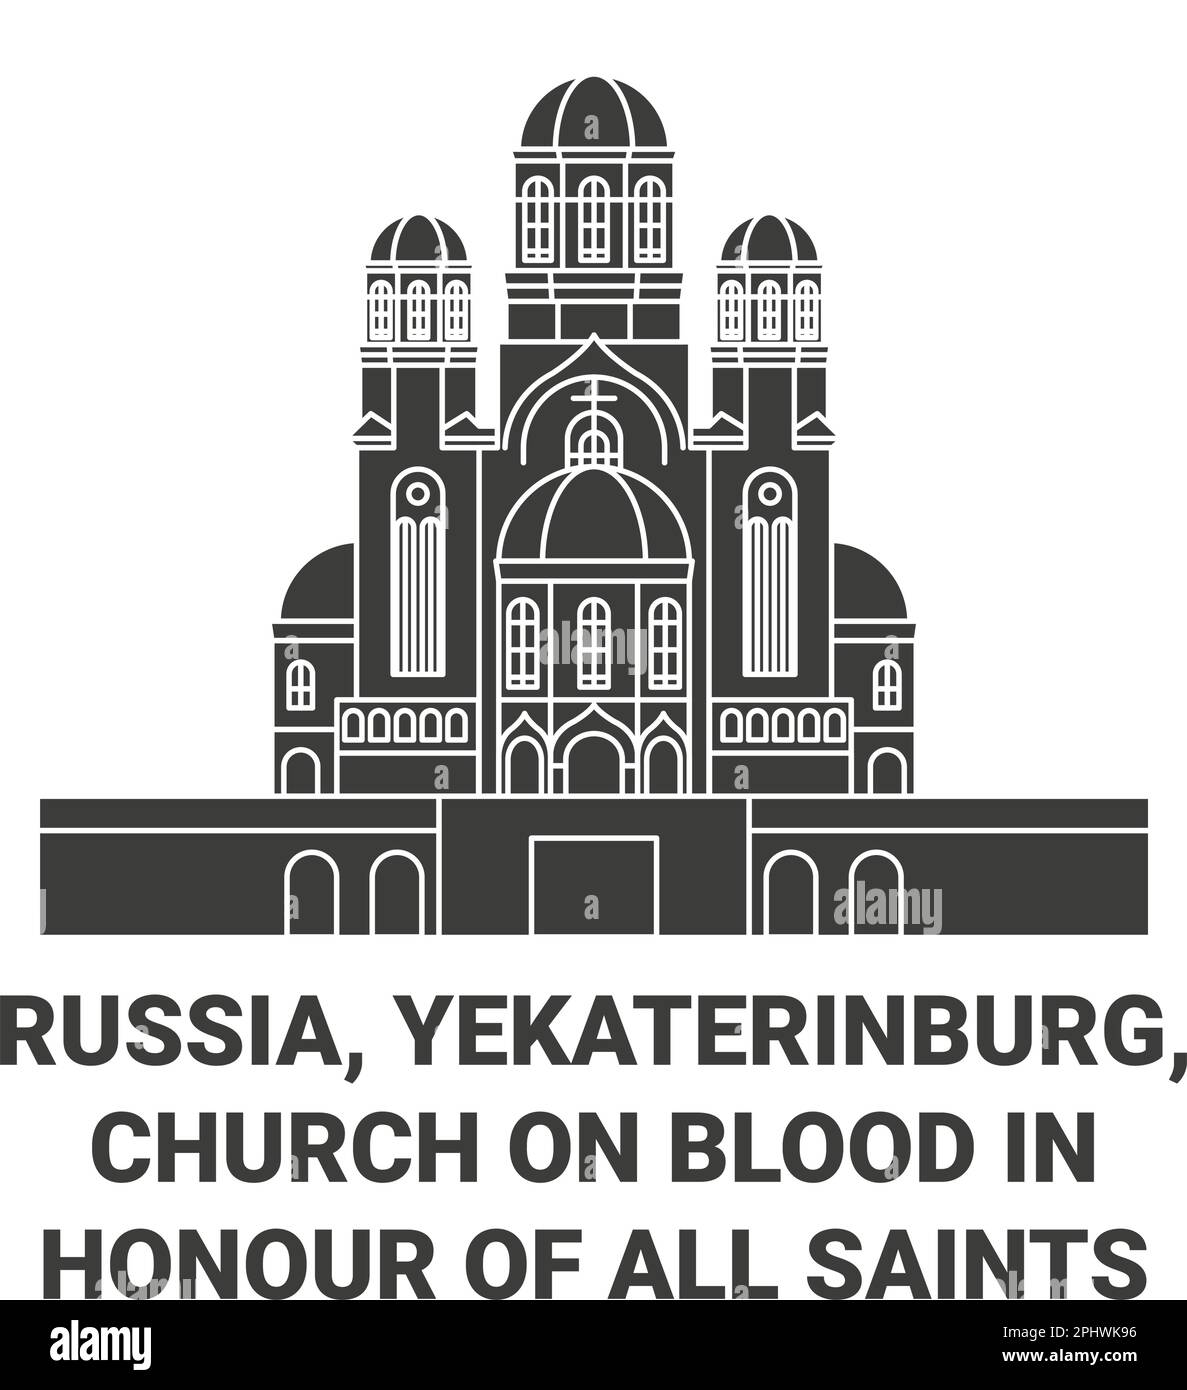 Russie, Iekaterinbourg, Eglise sur le sang en l'honneur de tous les saints resplendent dans l'illustration du vecteur historique du voyage en terre russe Illustration de Vecteur